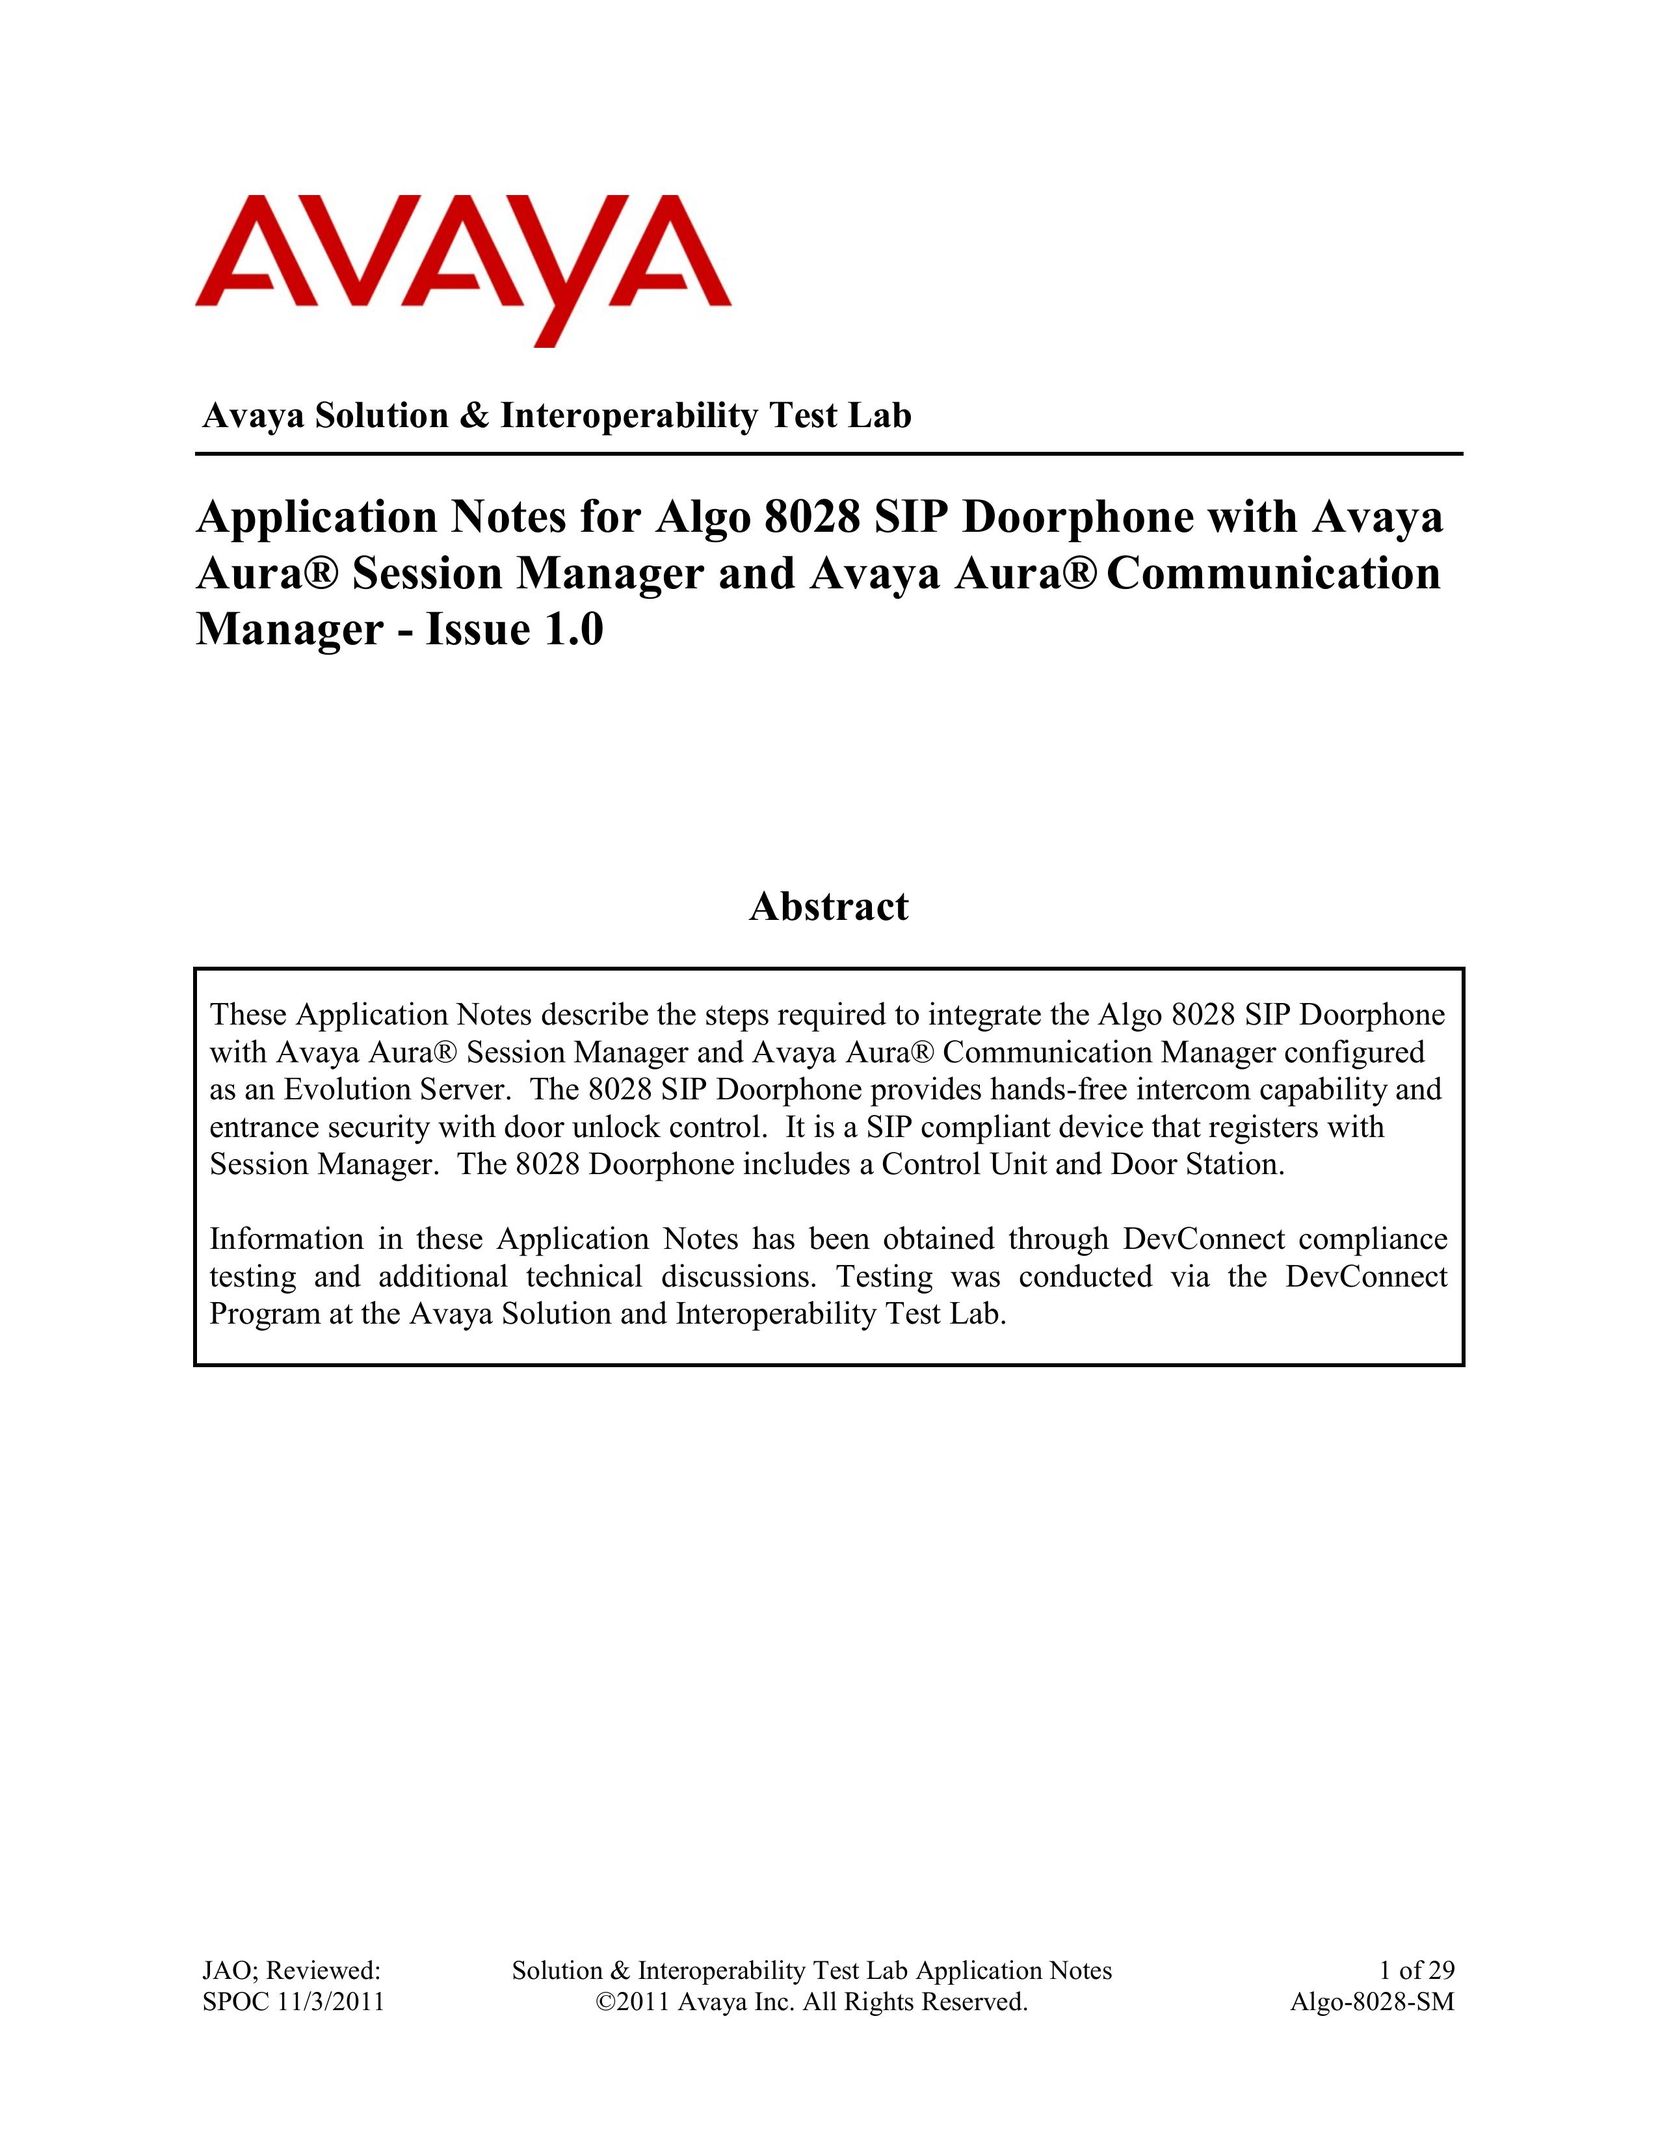 Avaya ALGO-8028-SM Intercom System User Manual